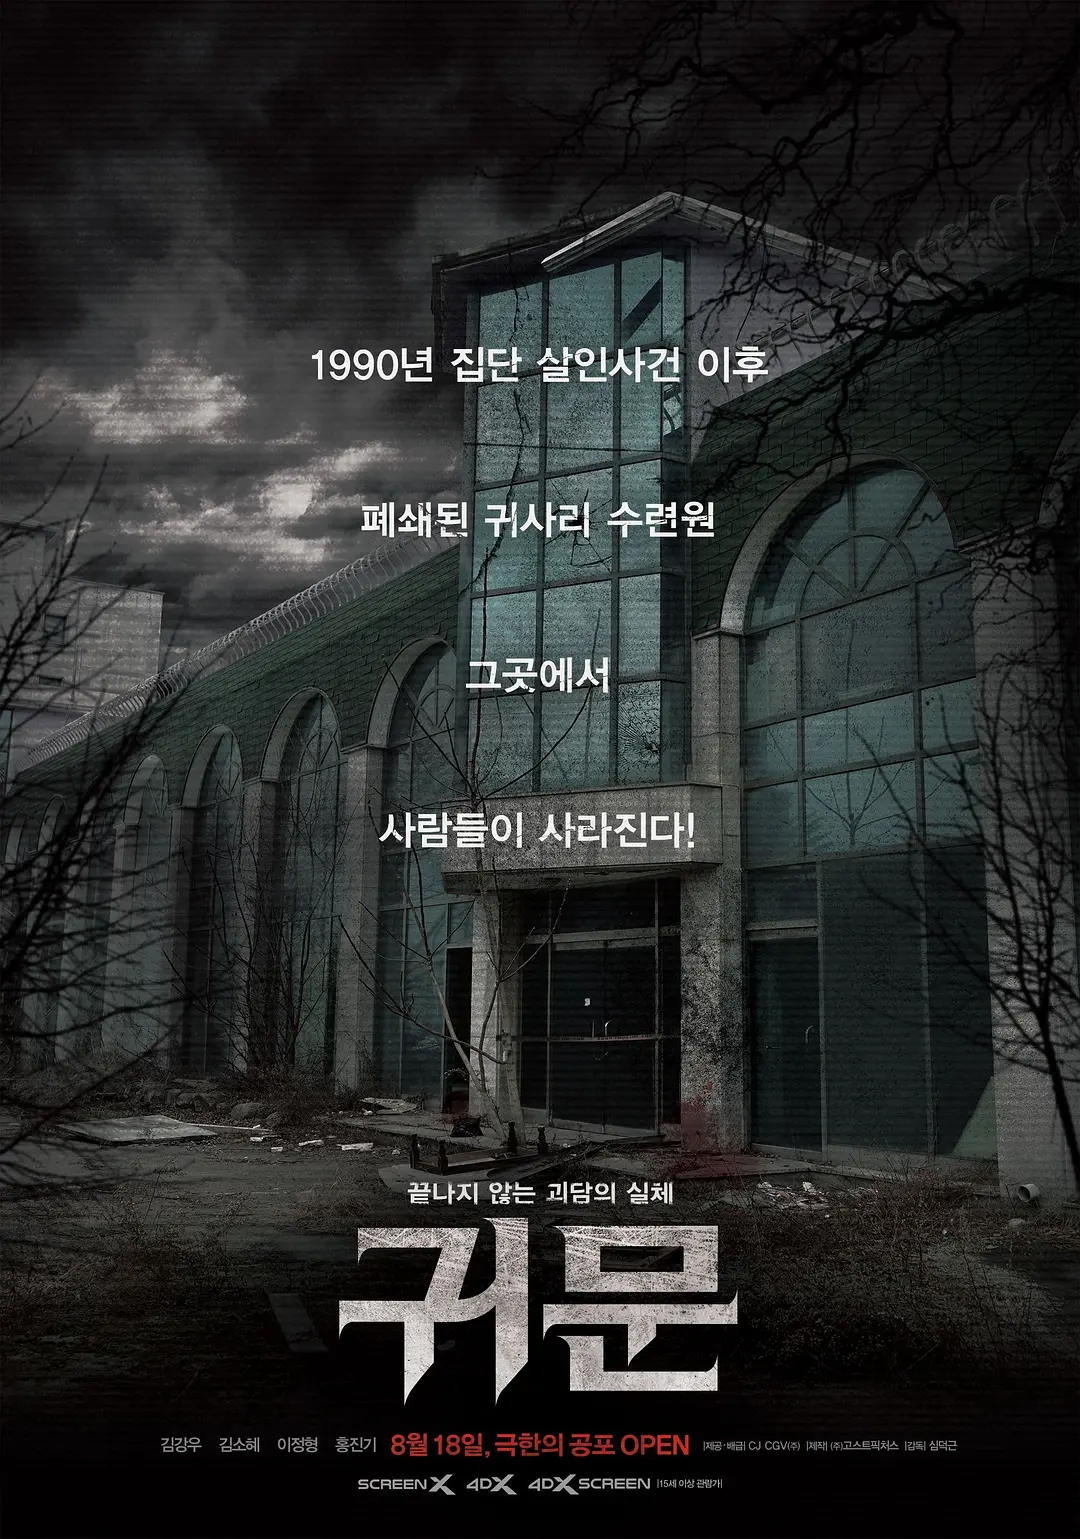 水泥埋尸,平行时间,这部韩国电影凭什么比《昆池岩》吓人?